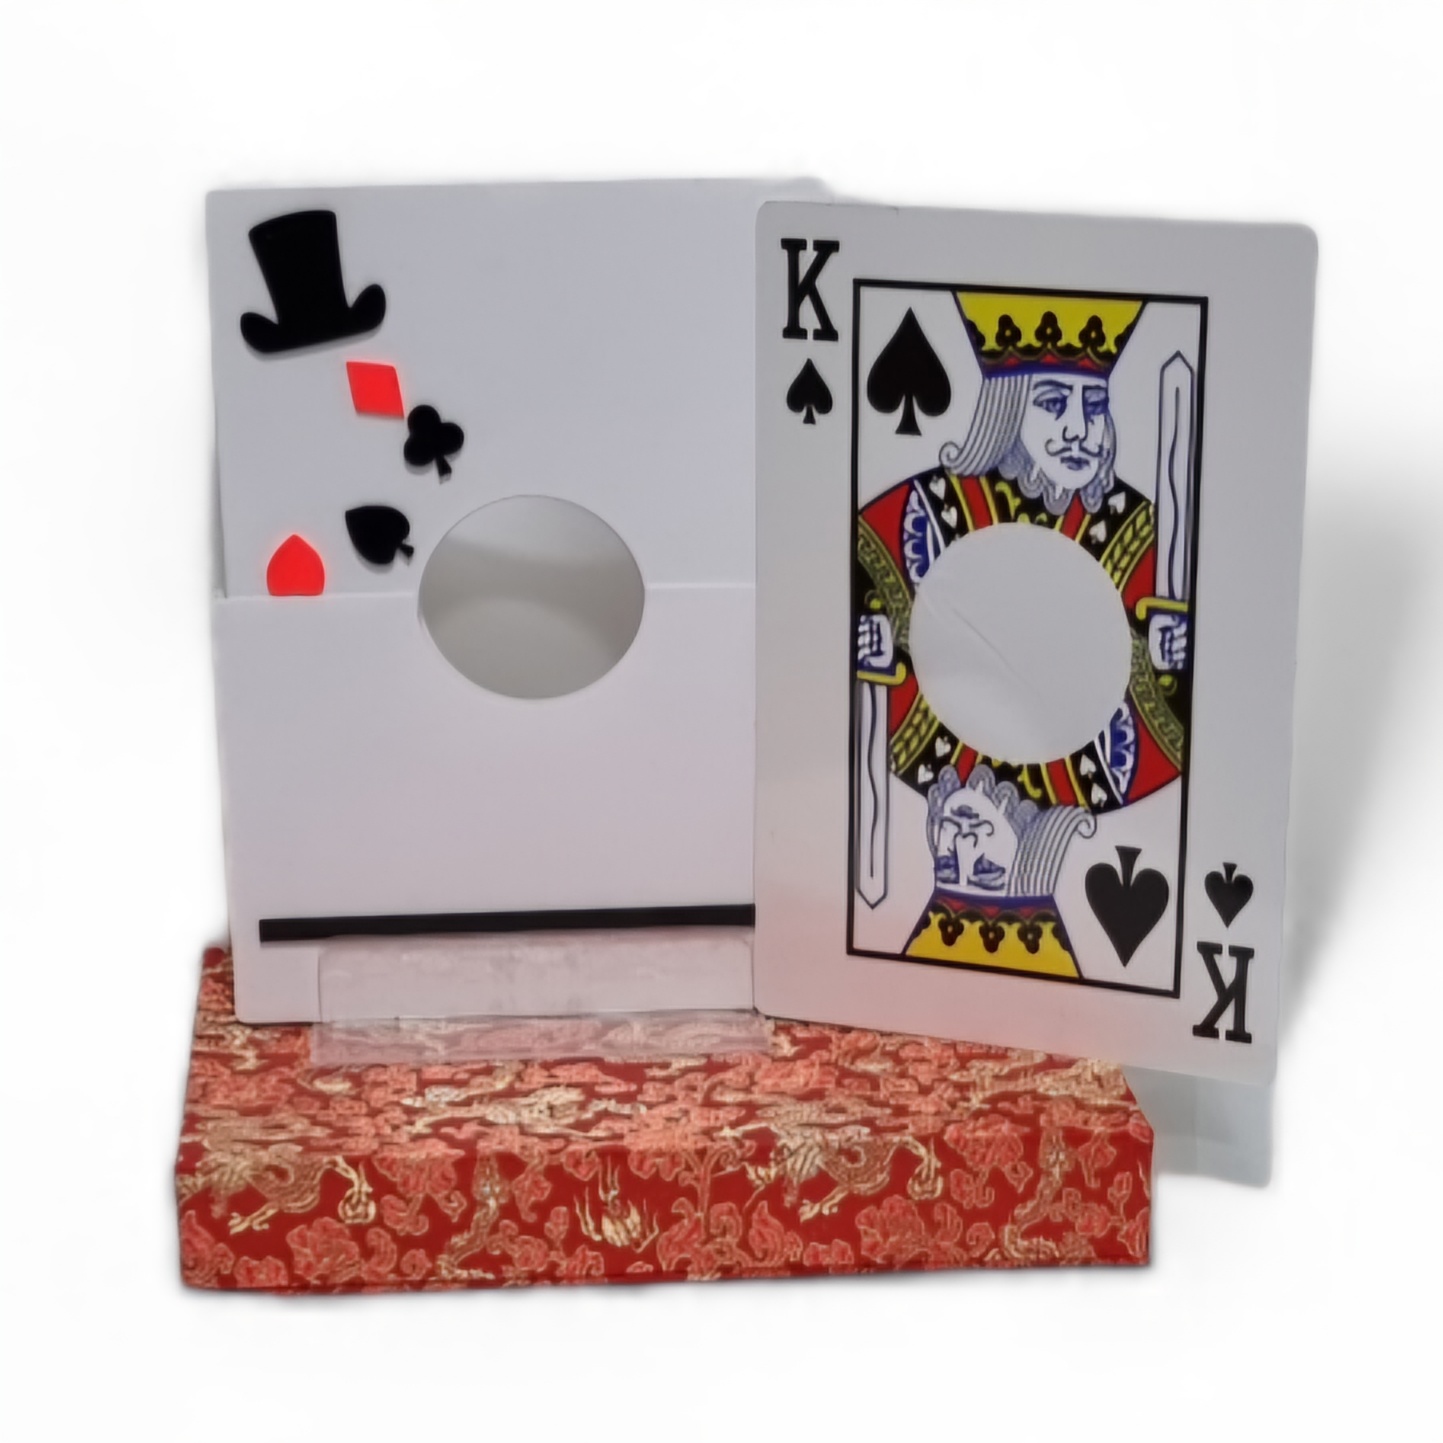 Card Through Arm IllusionCard Through Arm Illusion